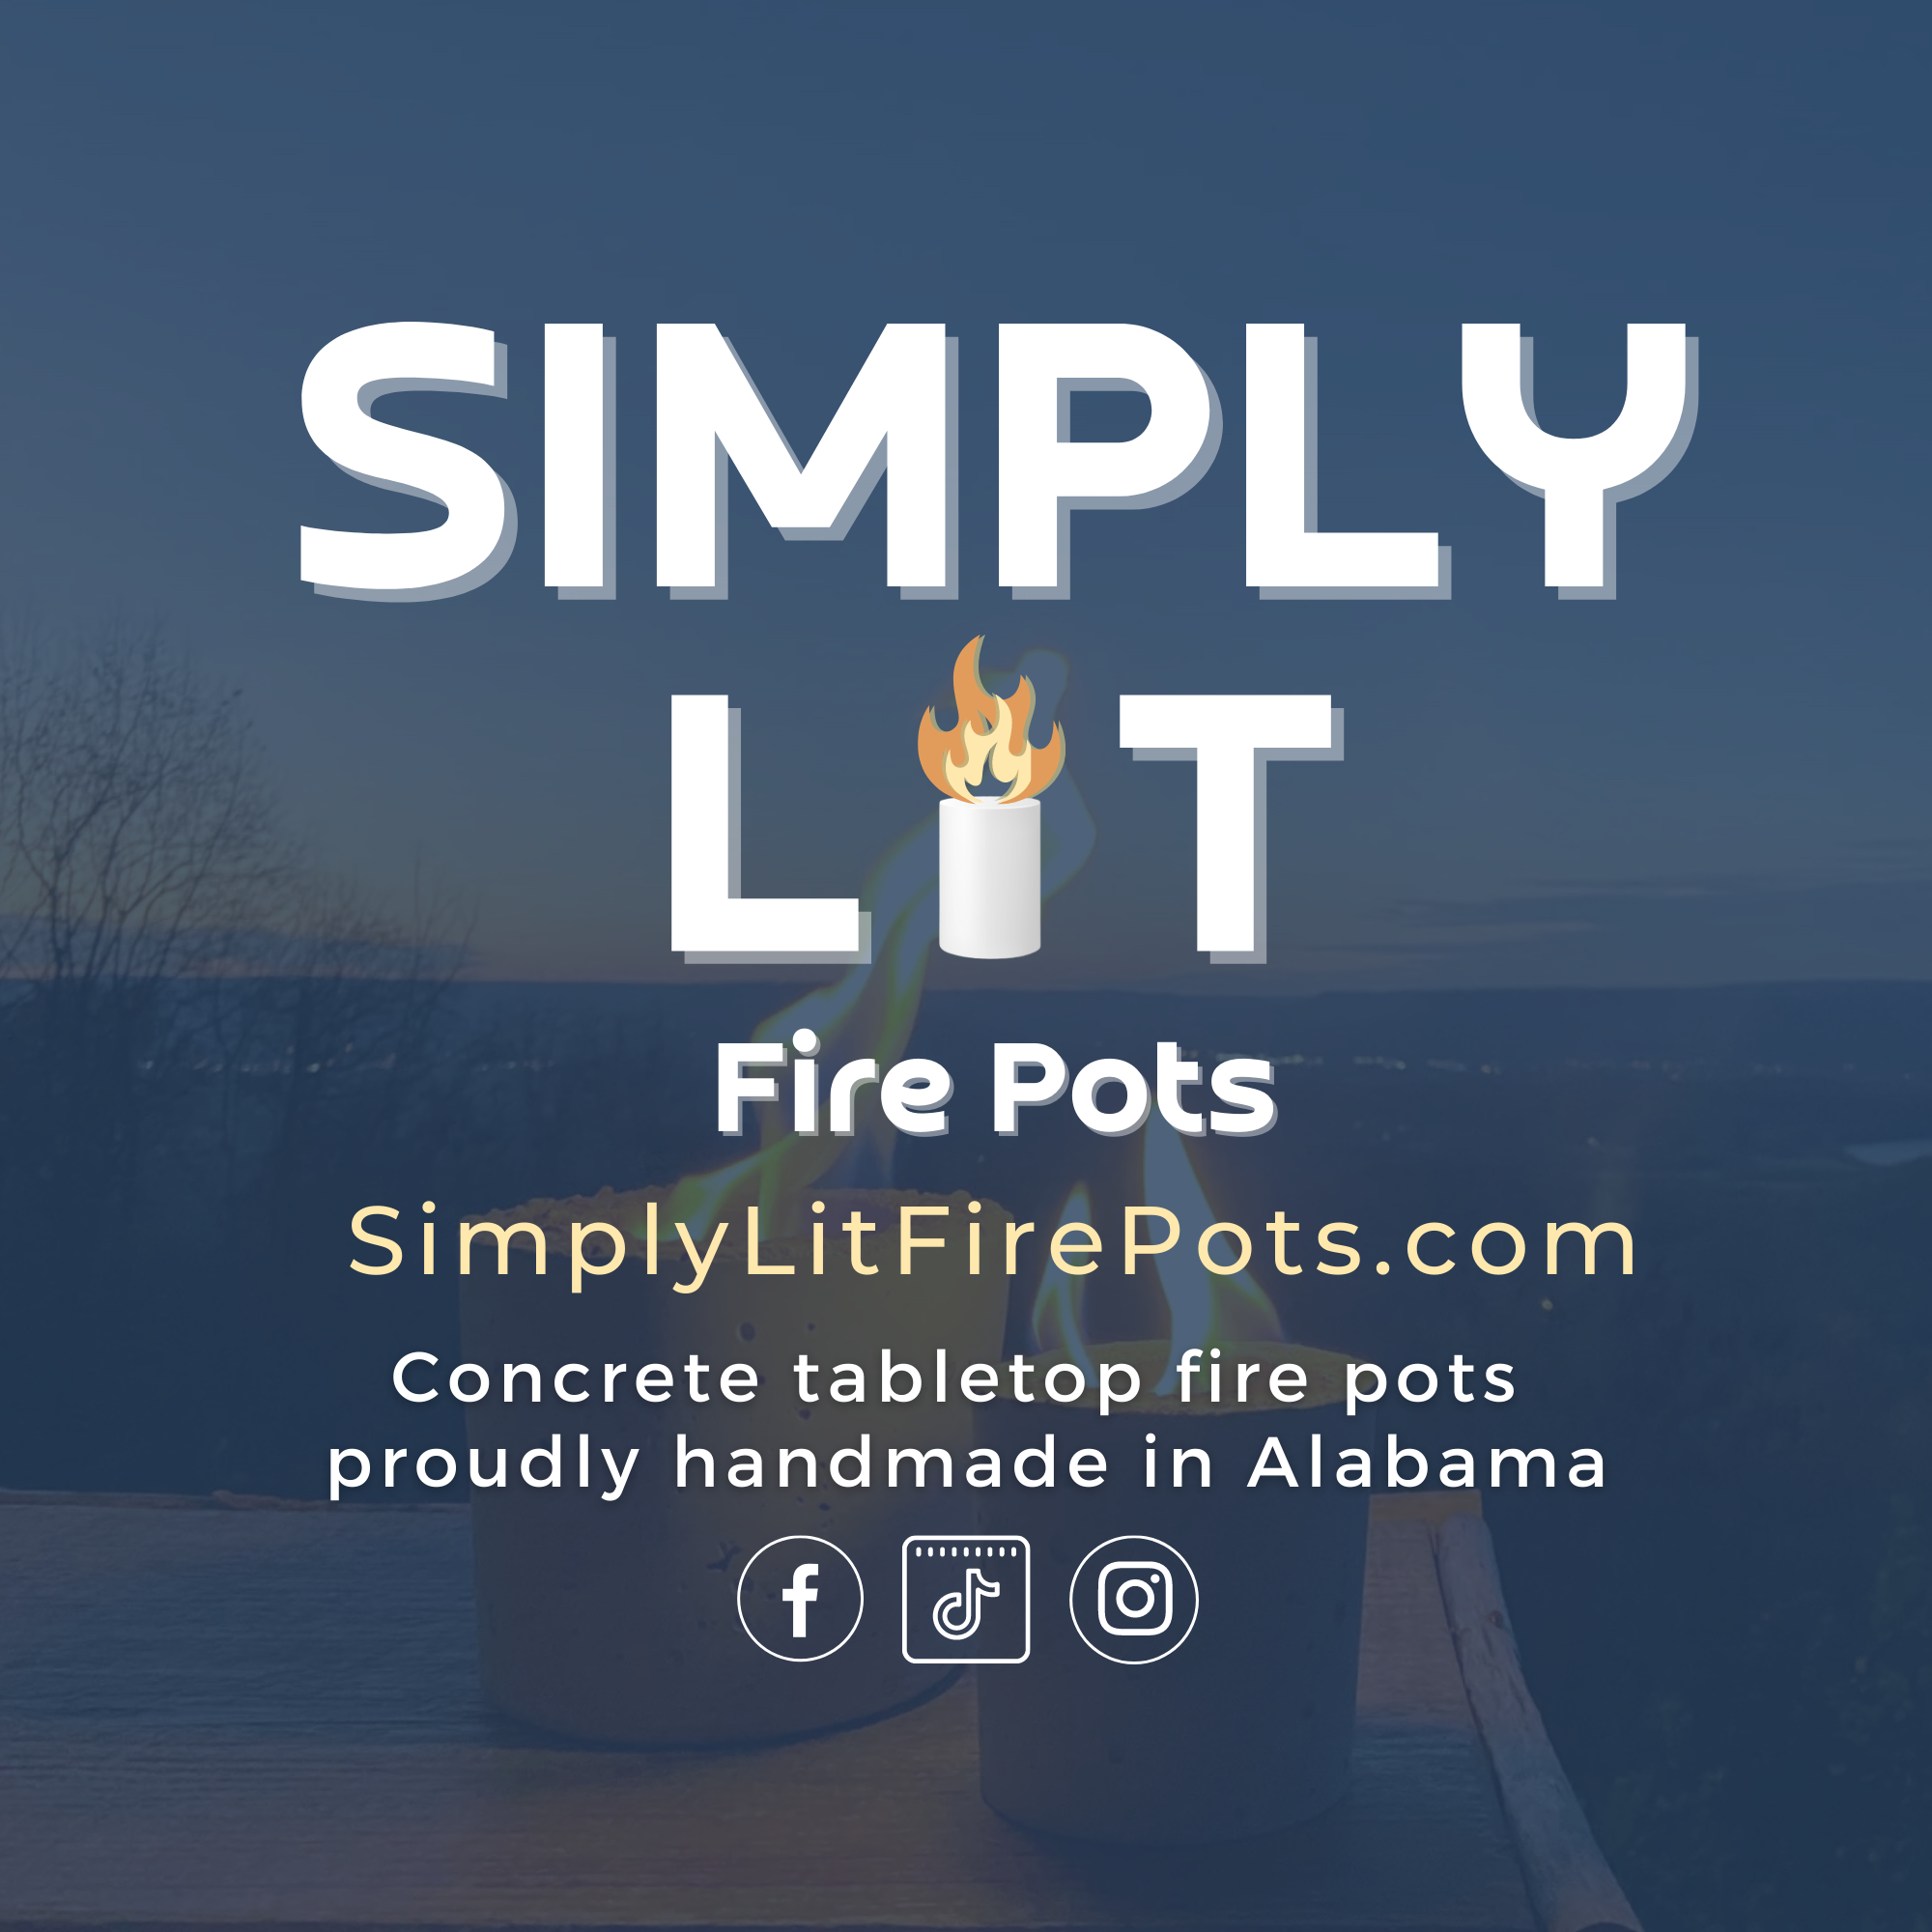 Simply Lit Fire Pots